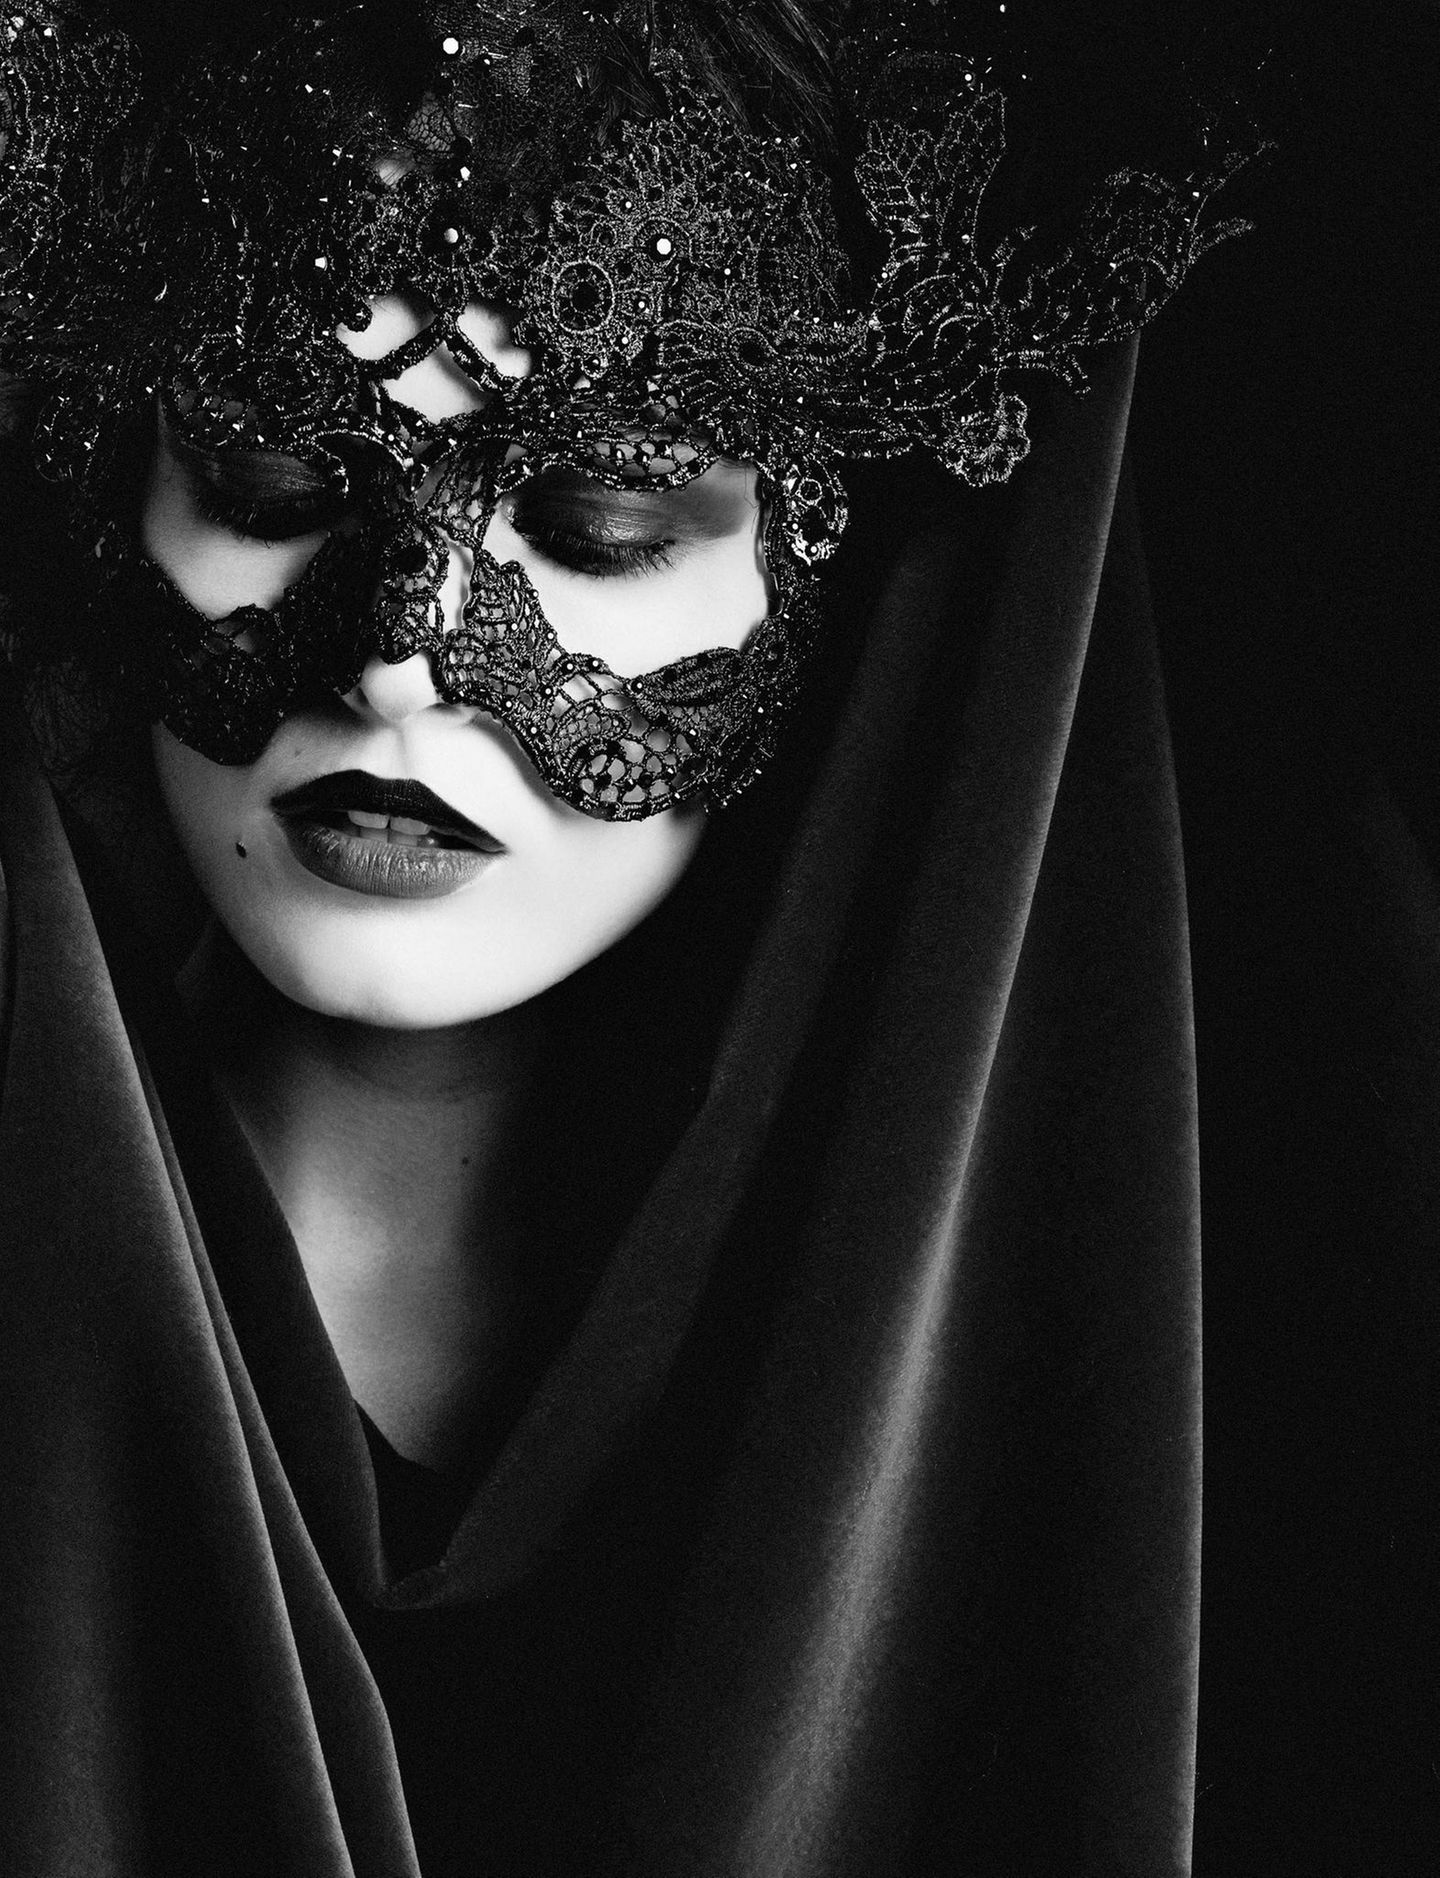 Загадочная маска. Девушка в маске. Девушка в черной маске. Левушка в черноц масее. Красивая девушка в маске.